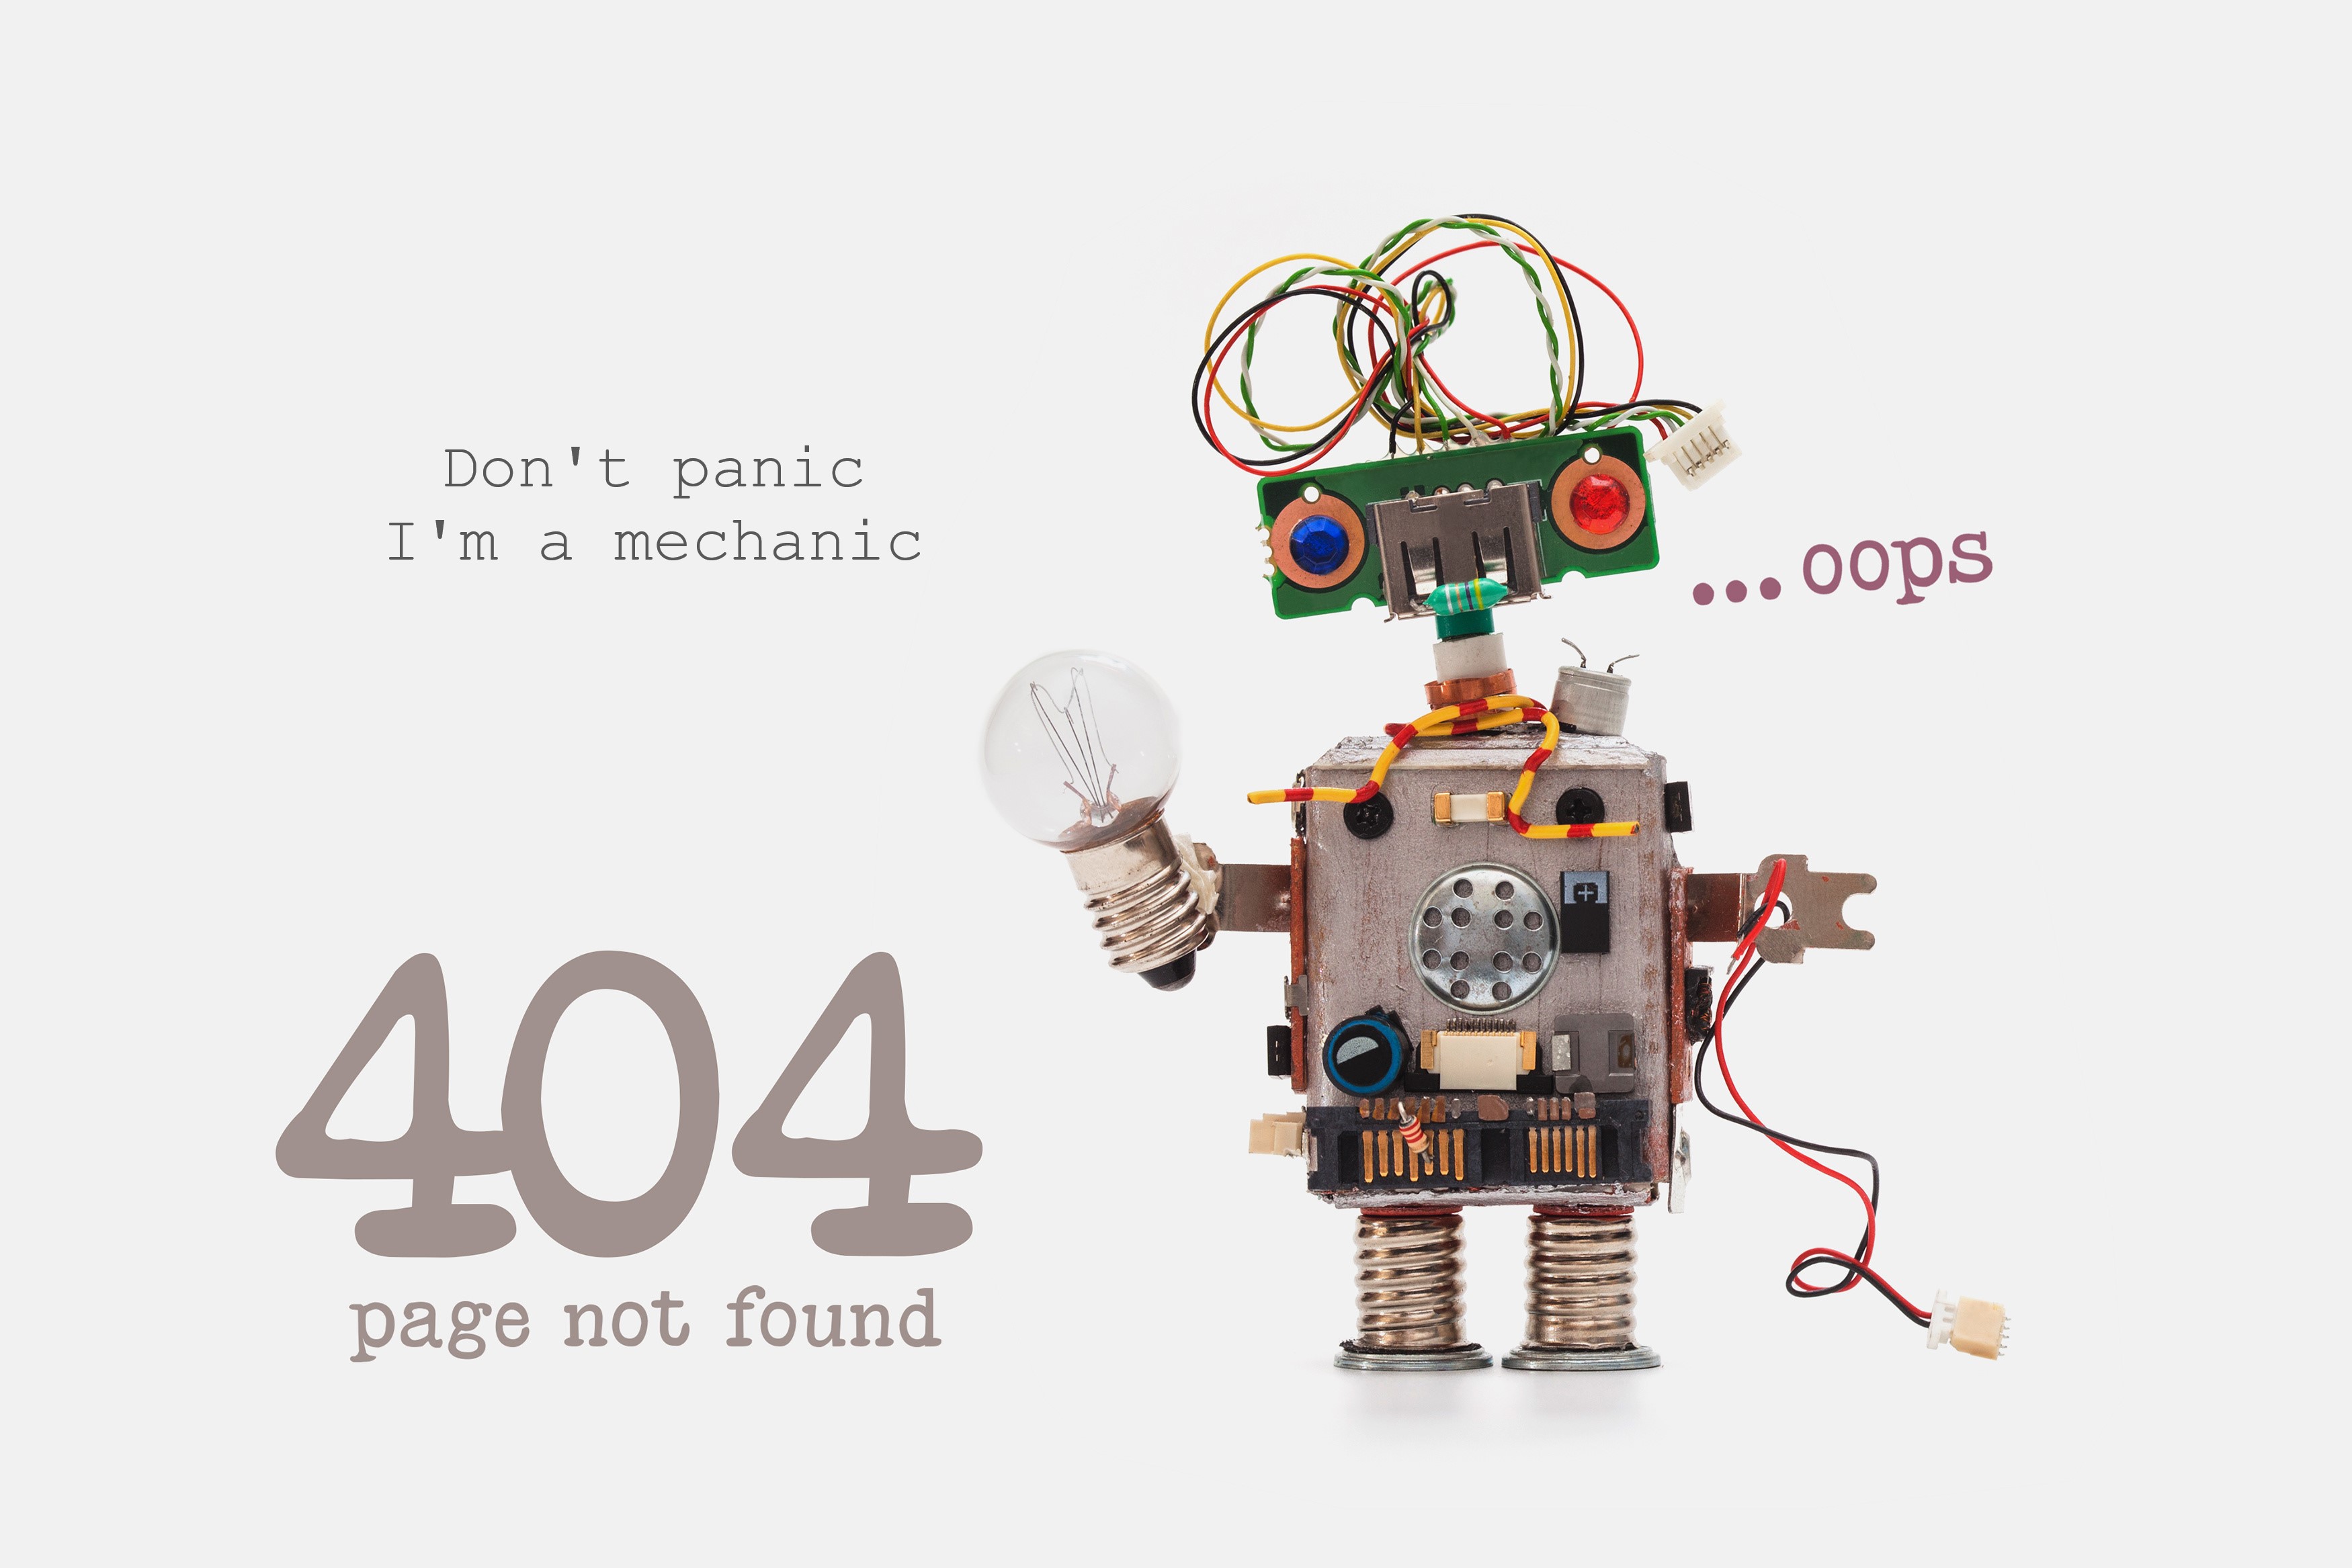 Klaida 404 – puslapis nerastas. Atlikite vieną iš veiksmų